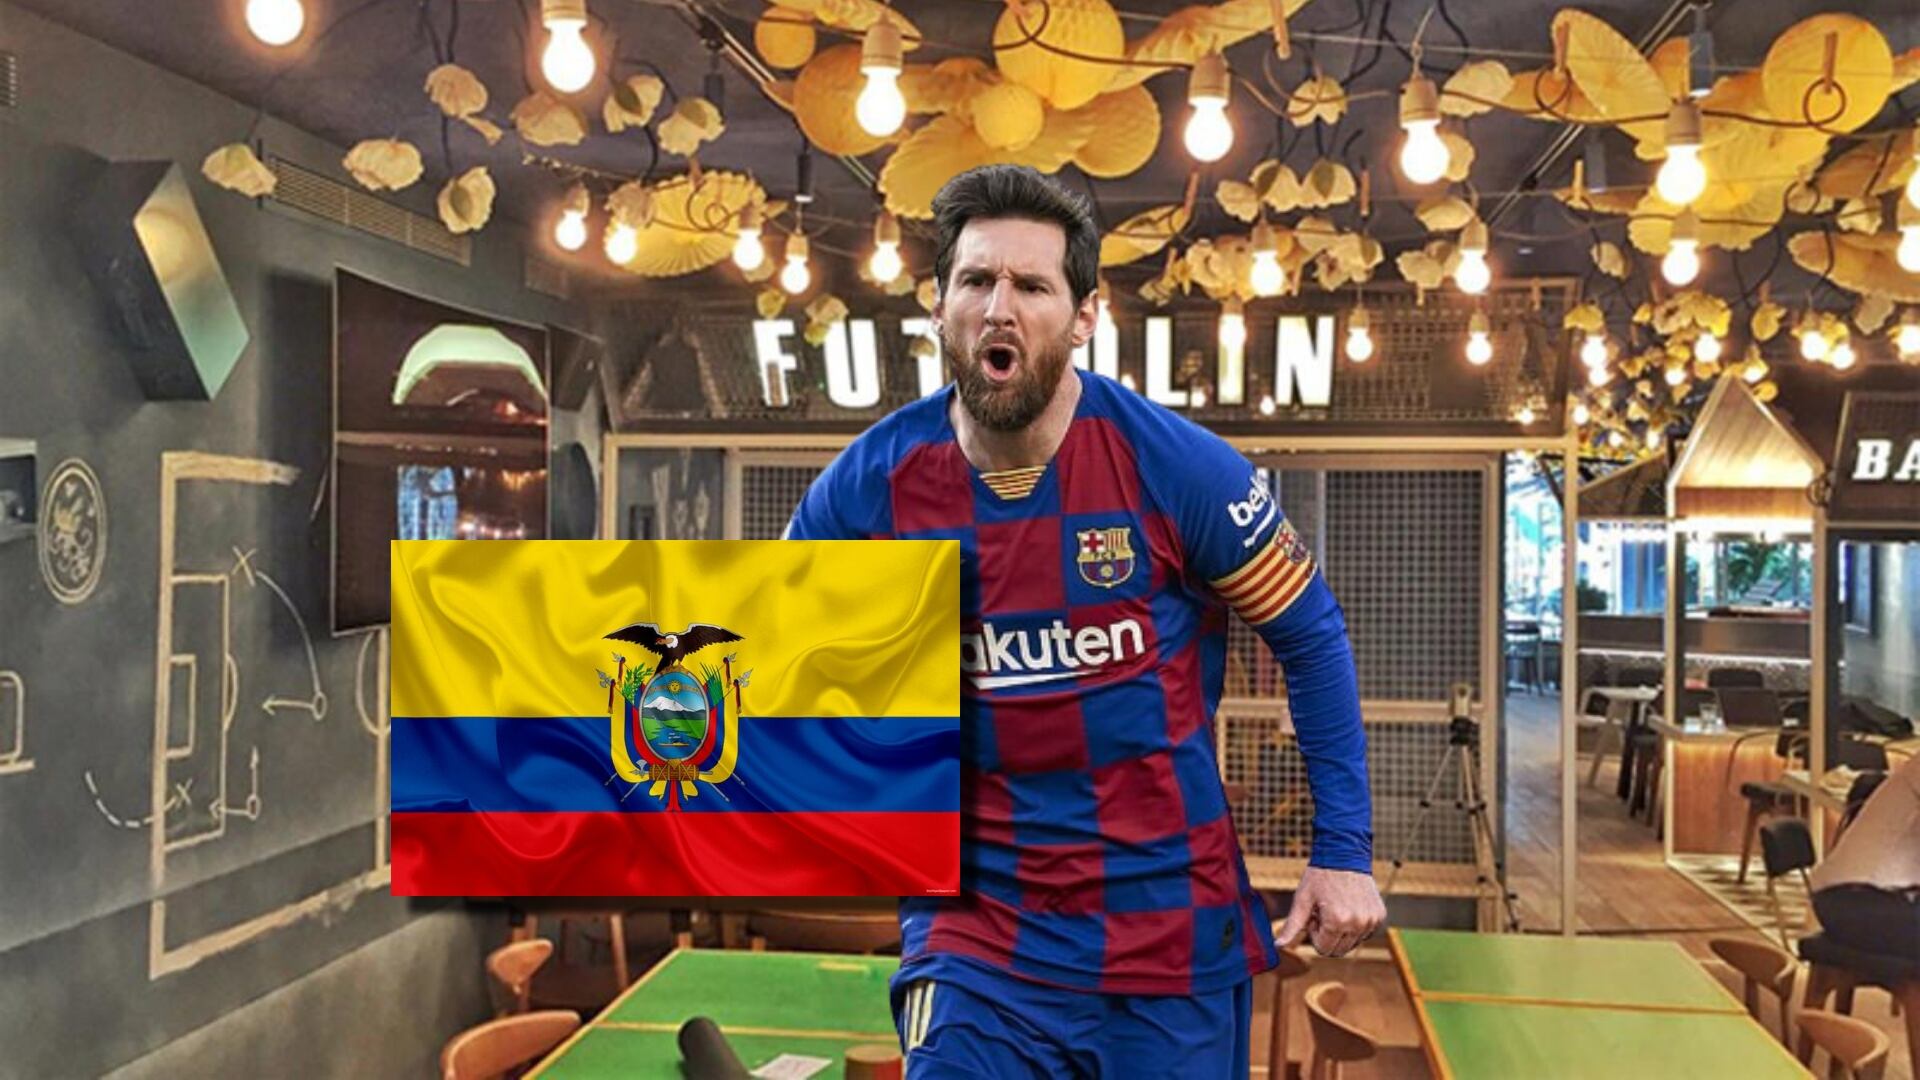 Mientras Messi tiene un restaurante de lujo, el ecuatoriano que vende mollejas